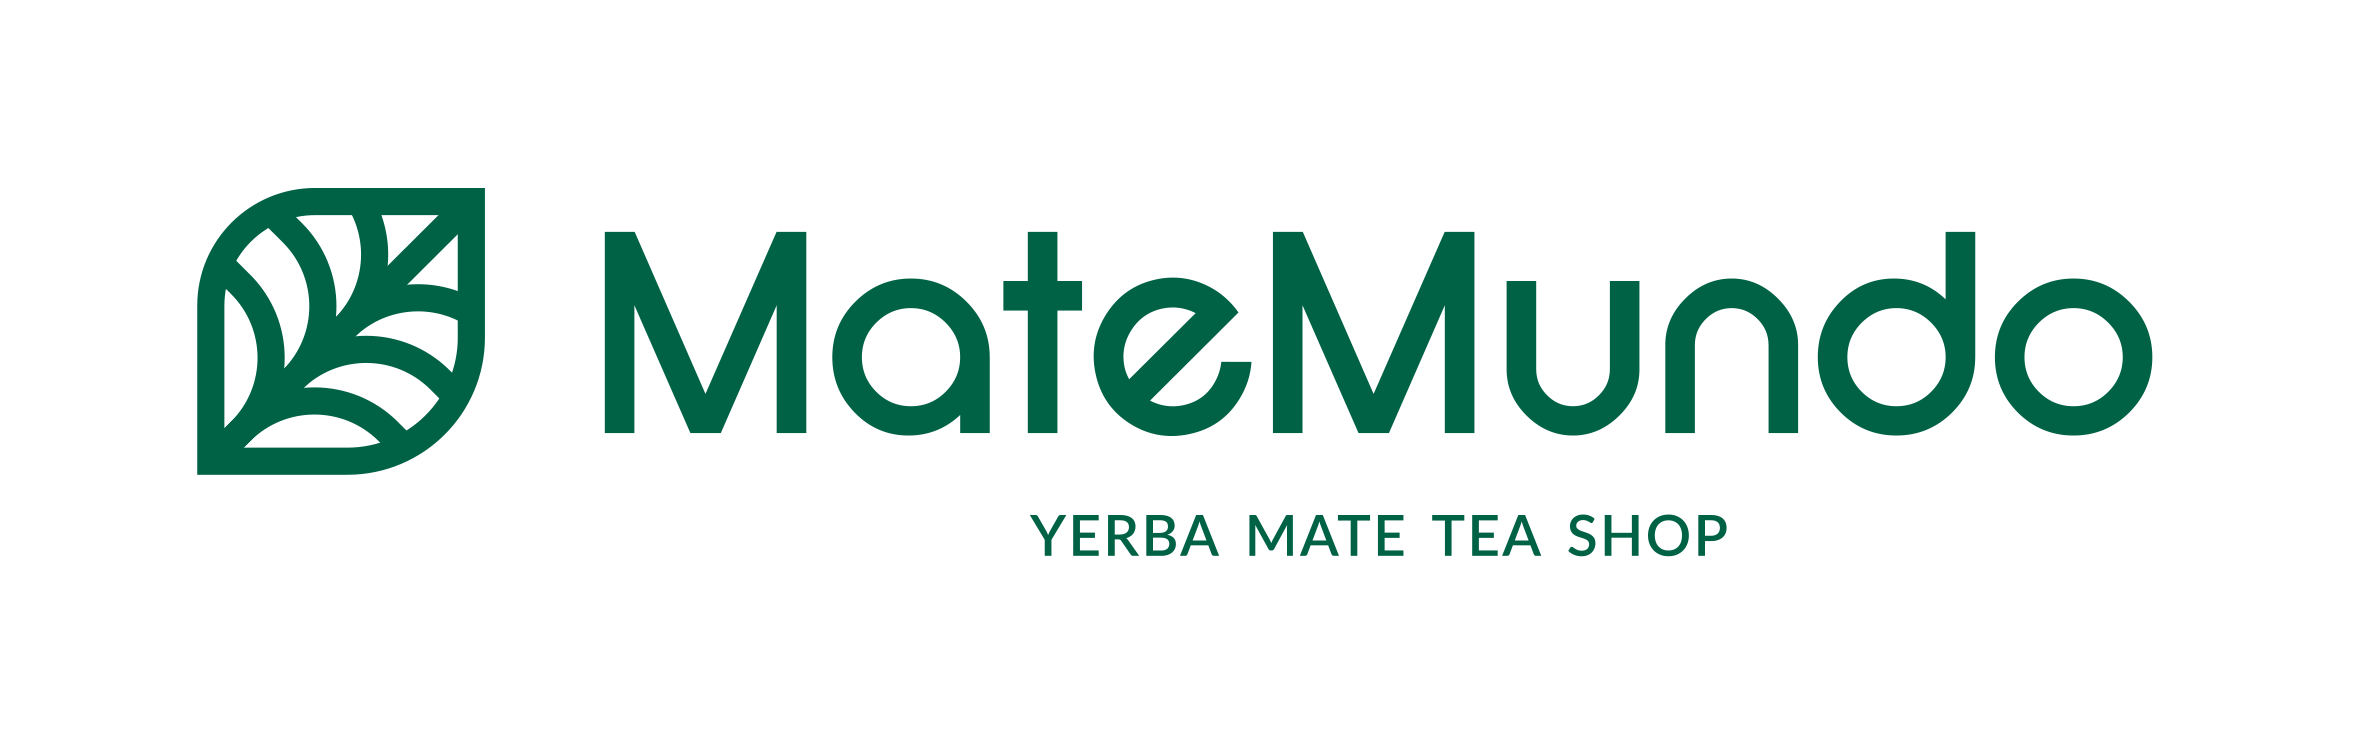 Yerba Mate Tea Shop Online - MateMundo.co.uk